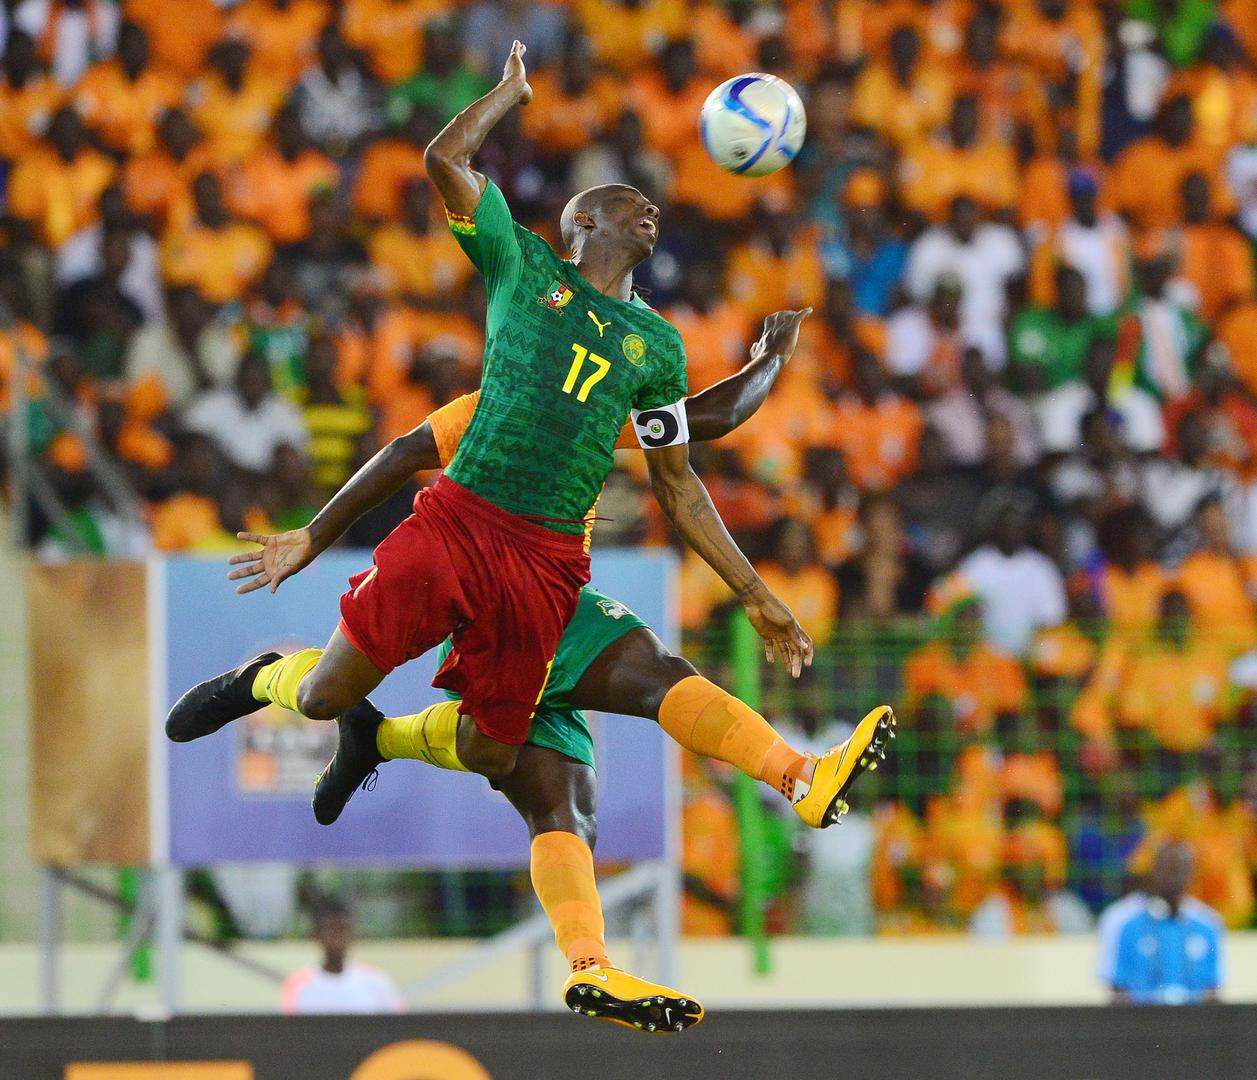 Kamerun, osvajač ovogodišnjeg Afričkog kupa nacija te Alžir ispali su veliki gubitnici u 'skupini smrti'. Na kraju se radovala Nigerija, Zambija je bila druga, Kamerun treći, a Soudanijev Alžir posljednji sa samo dva osvojena boda.